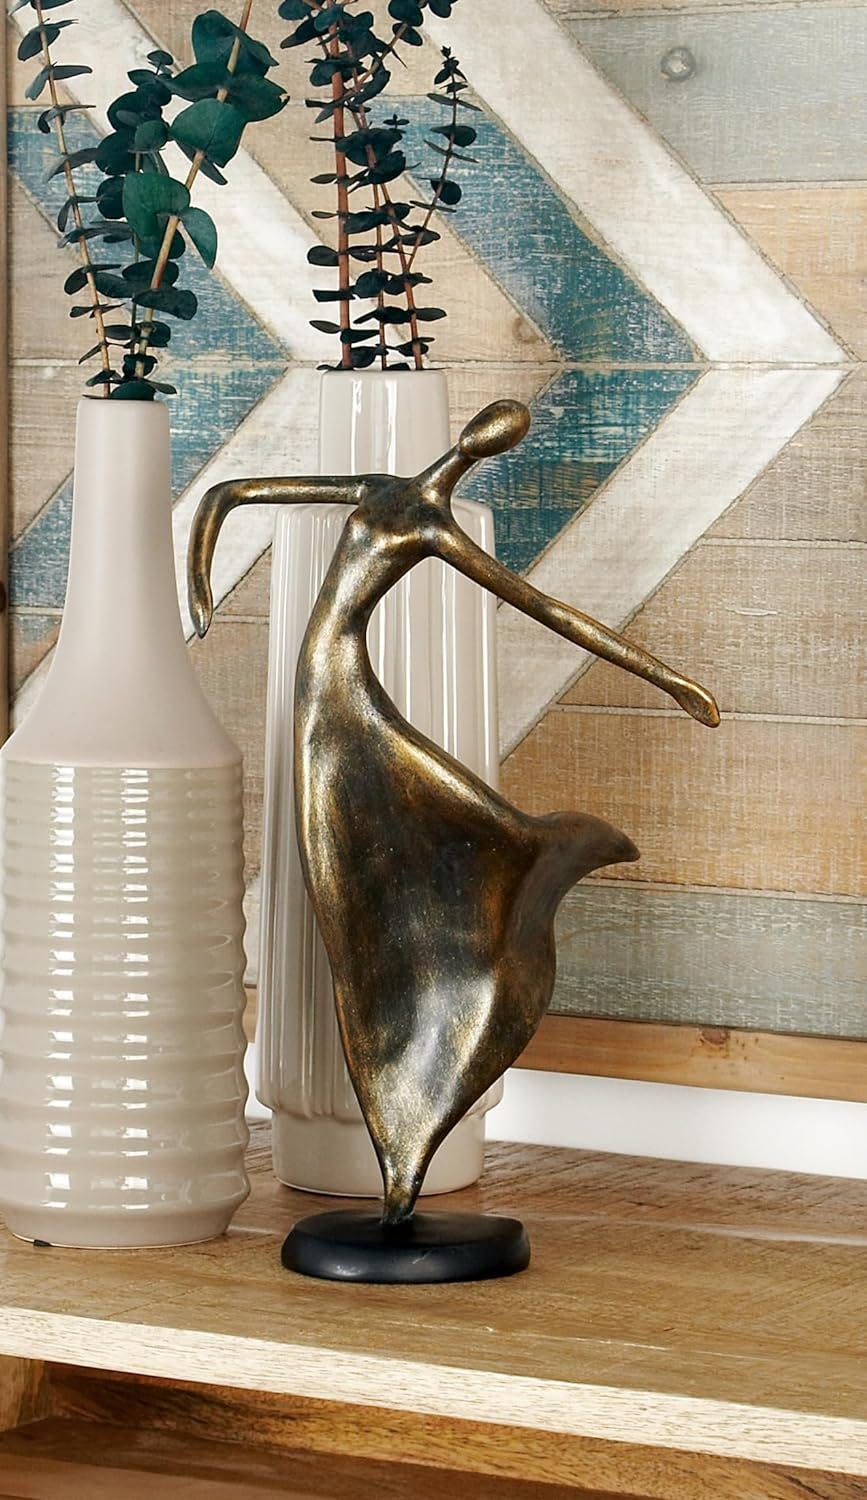 Elegant Weathered Brass Dancer Statue, 8"W x 12"H